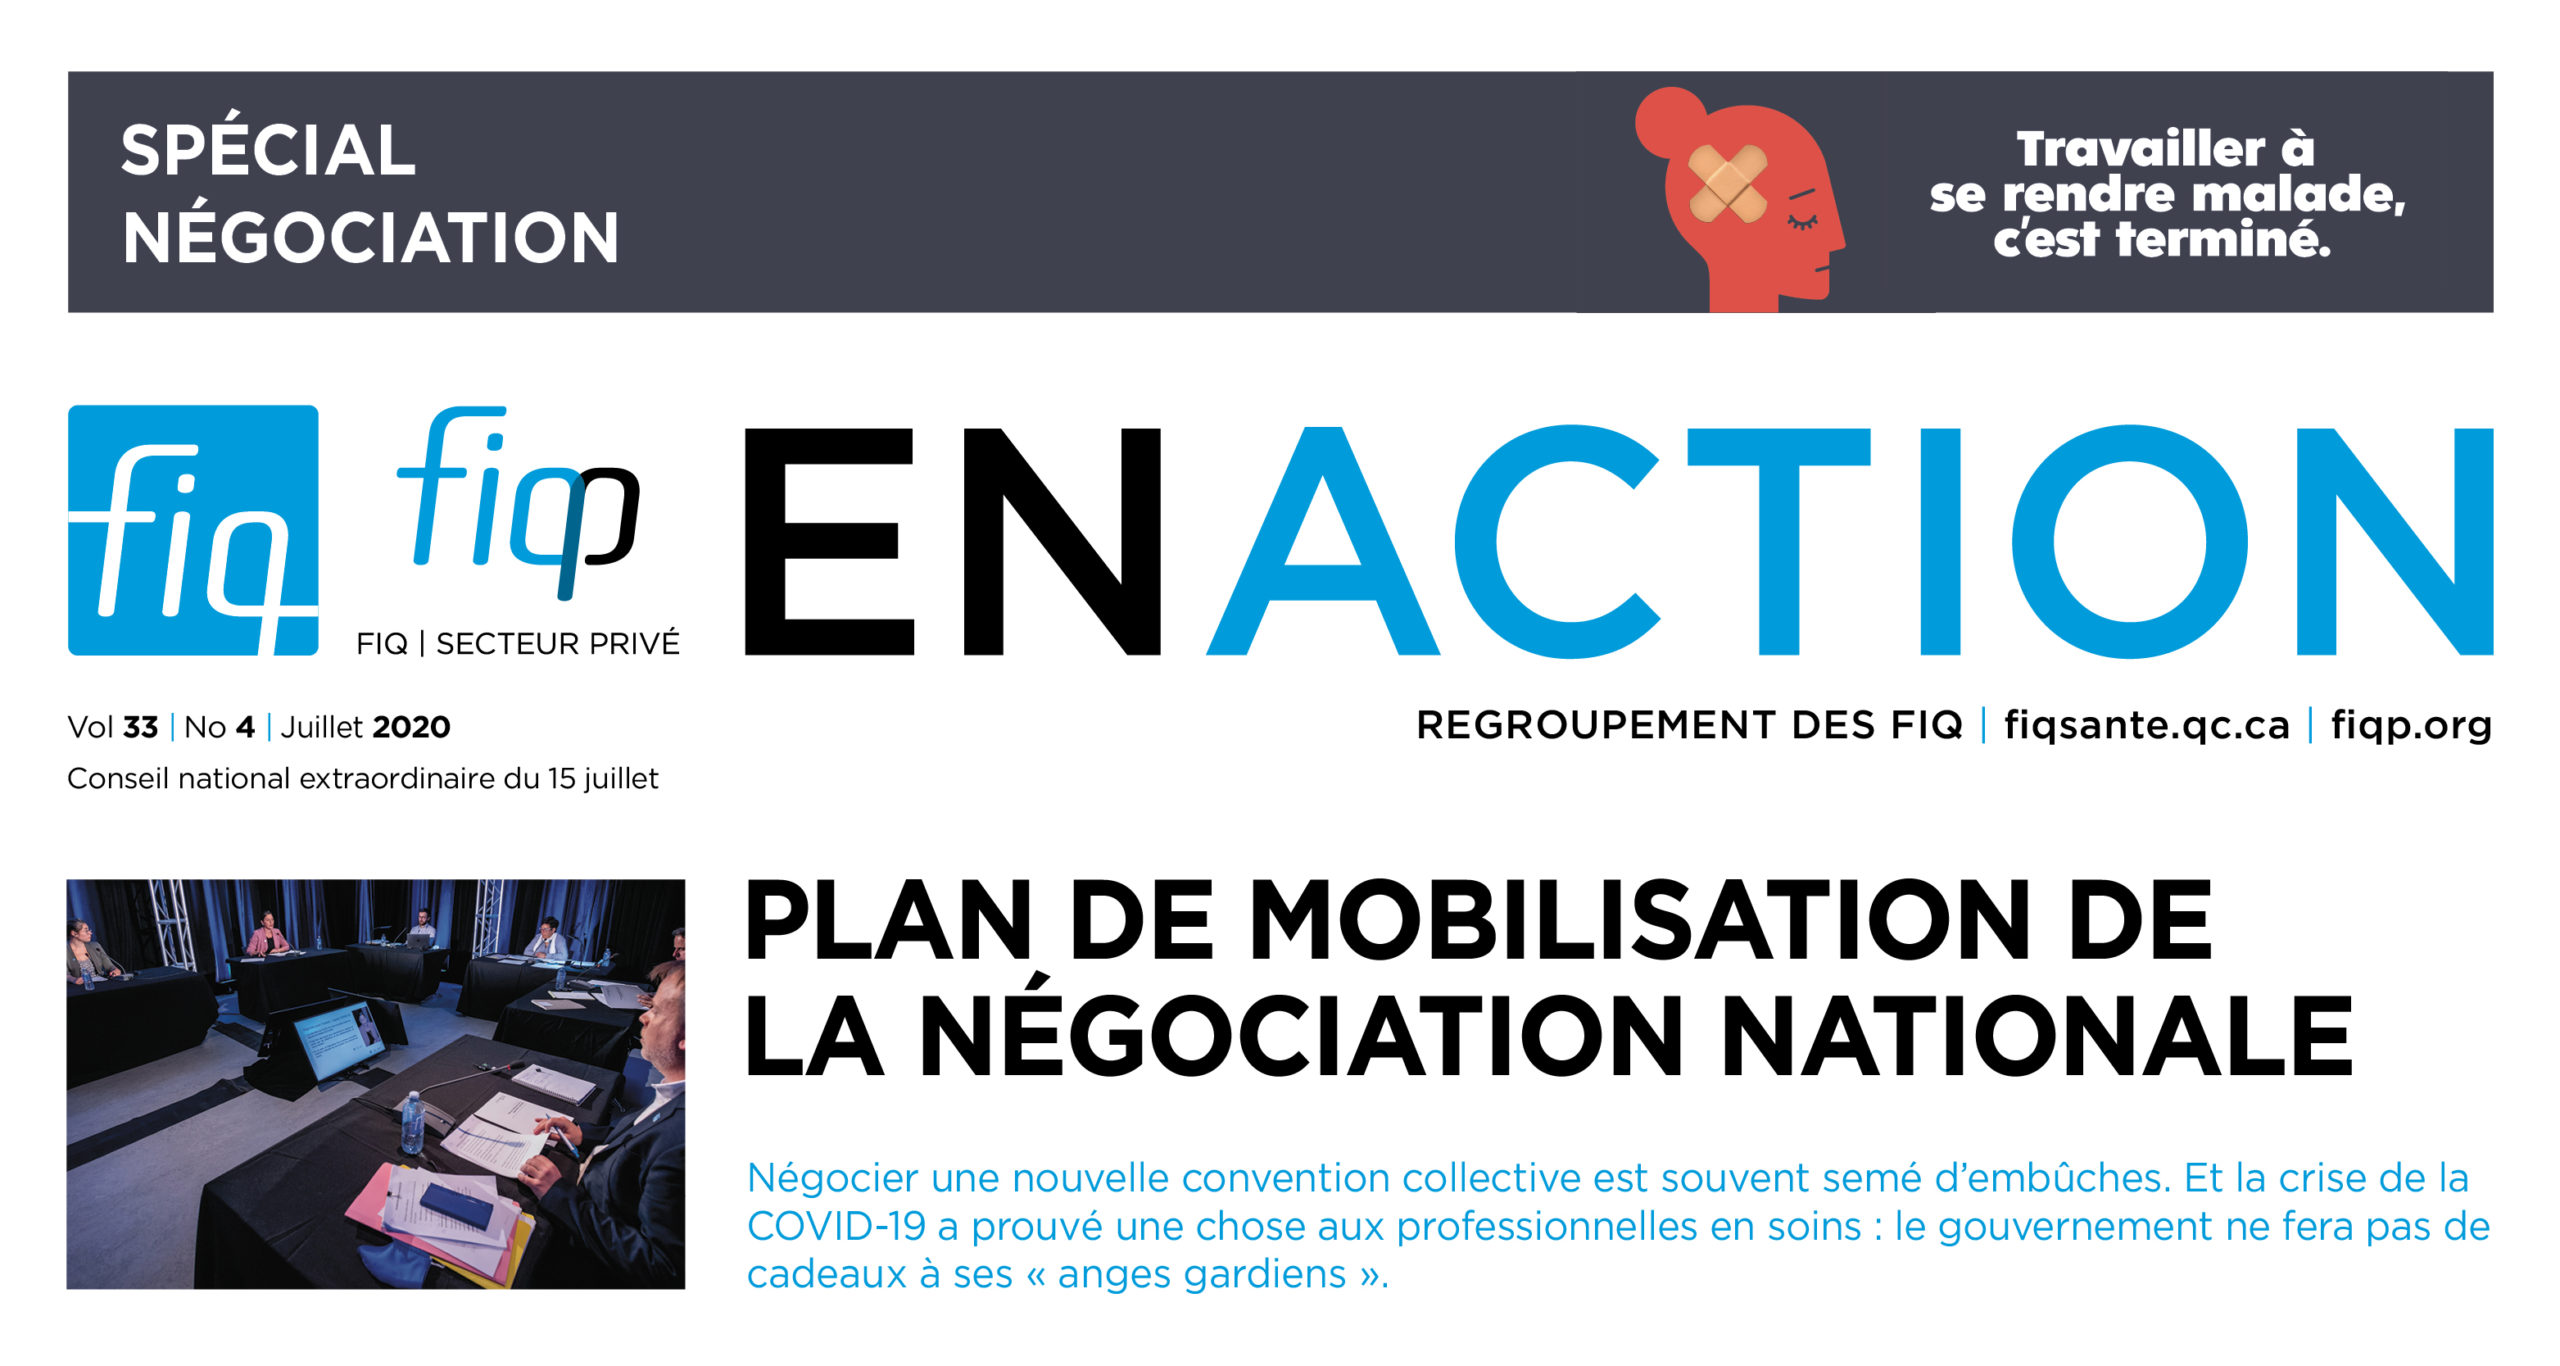 Le Journal En Action du Conseil national extraordinaire négociation du 15 juillet est maintenant disponible